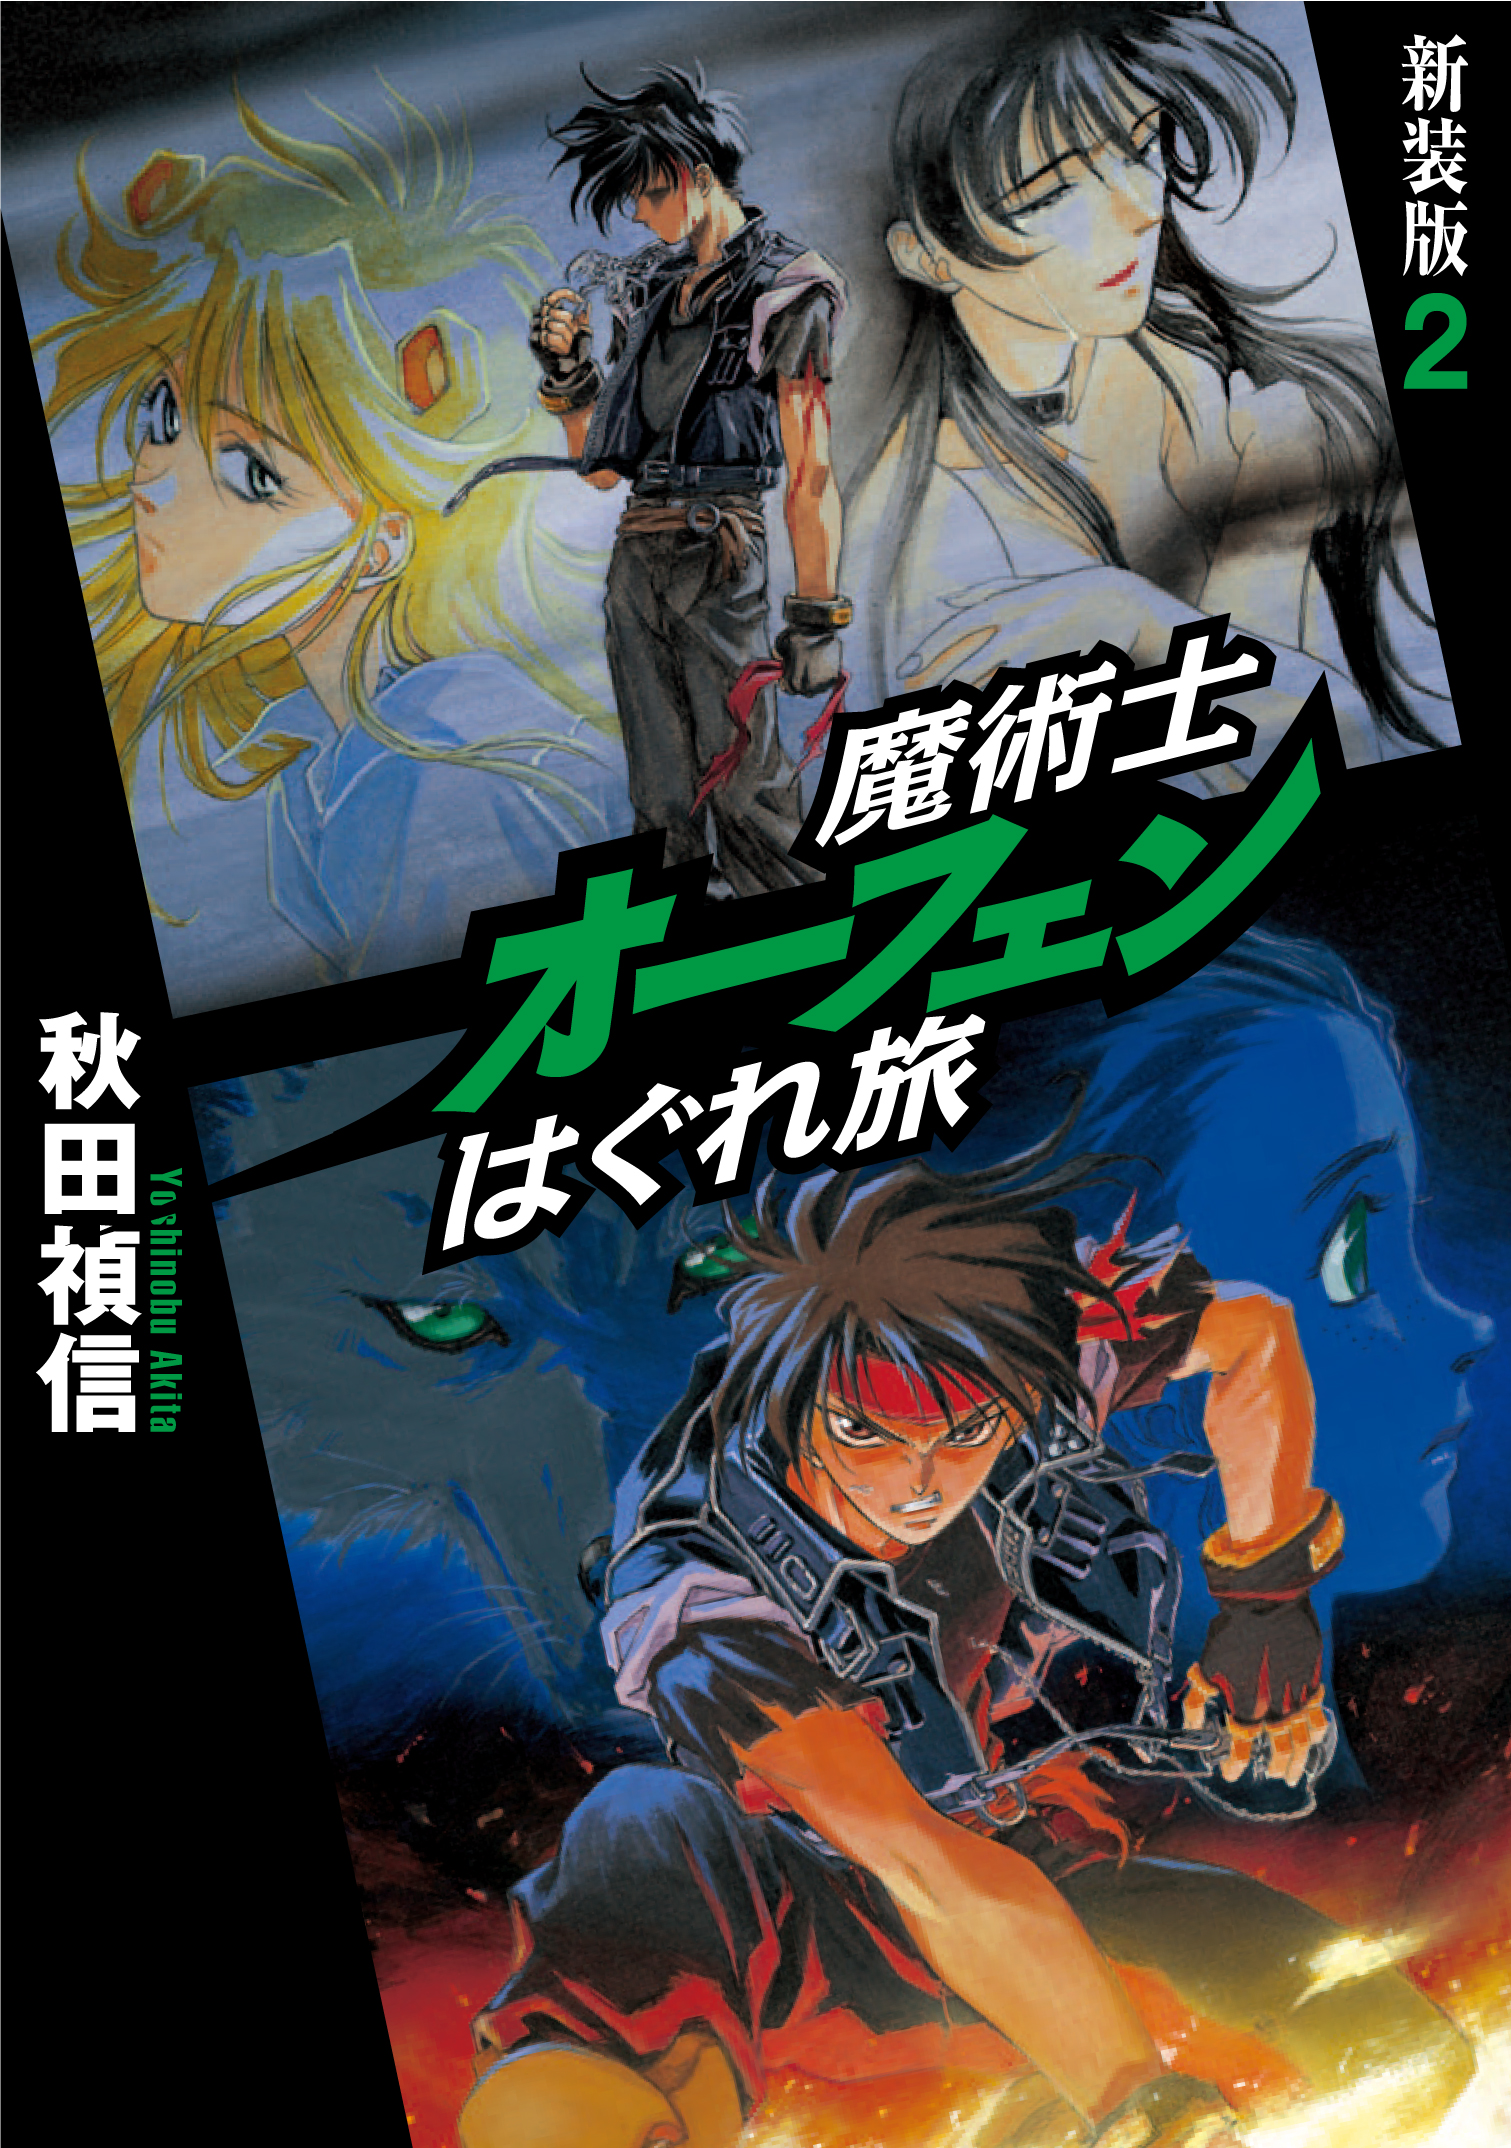 Sorcerous Stabber Orphen: The Wayward Journey Volume 3 by Yoshinobu Akita